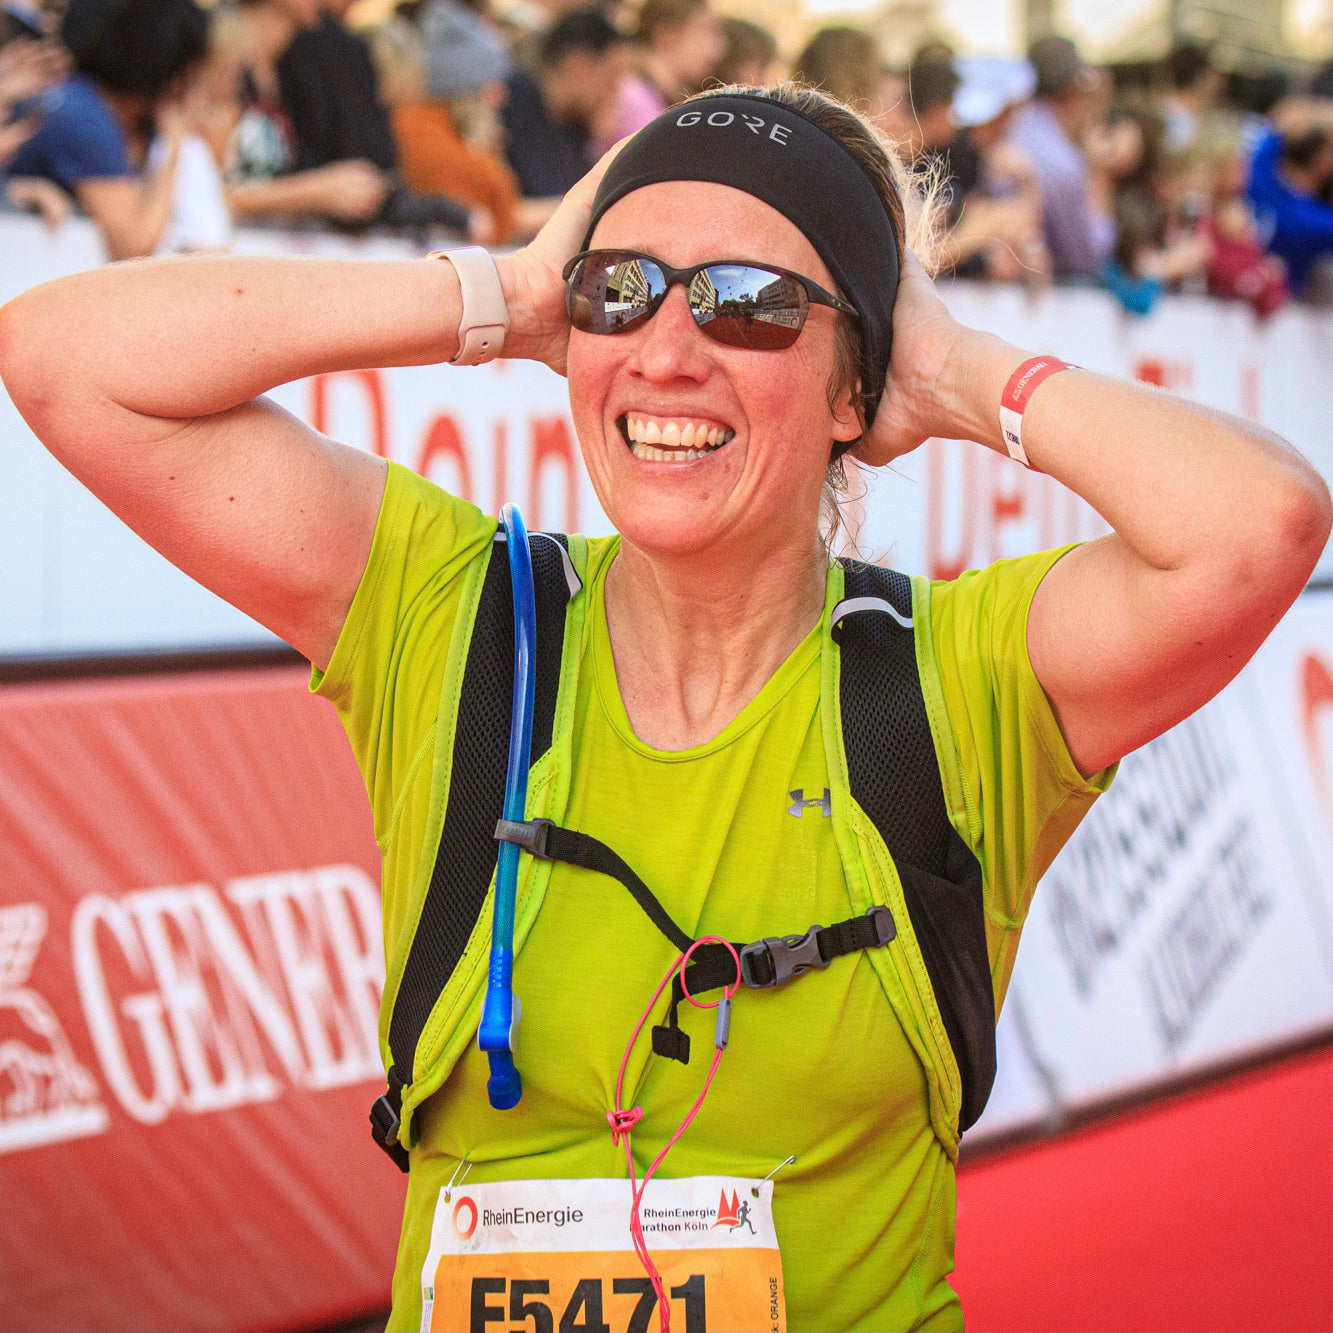 Hier ist eine glückliche Marathonteilnehmerin zu sehen, die durch das Ziel gelaufen ist.